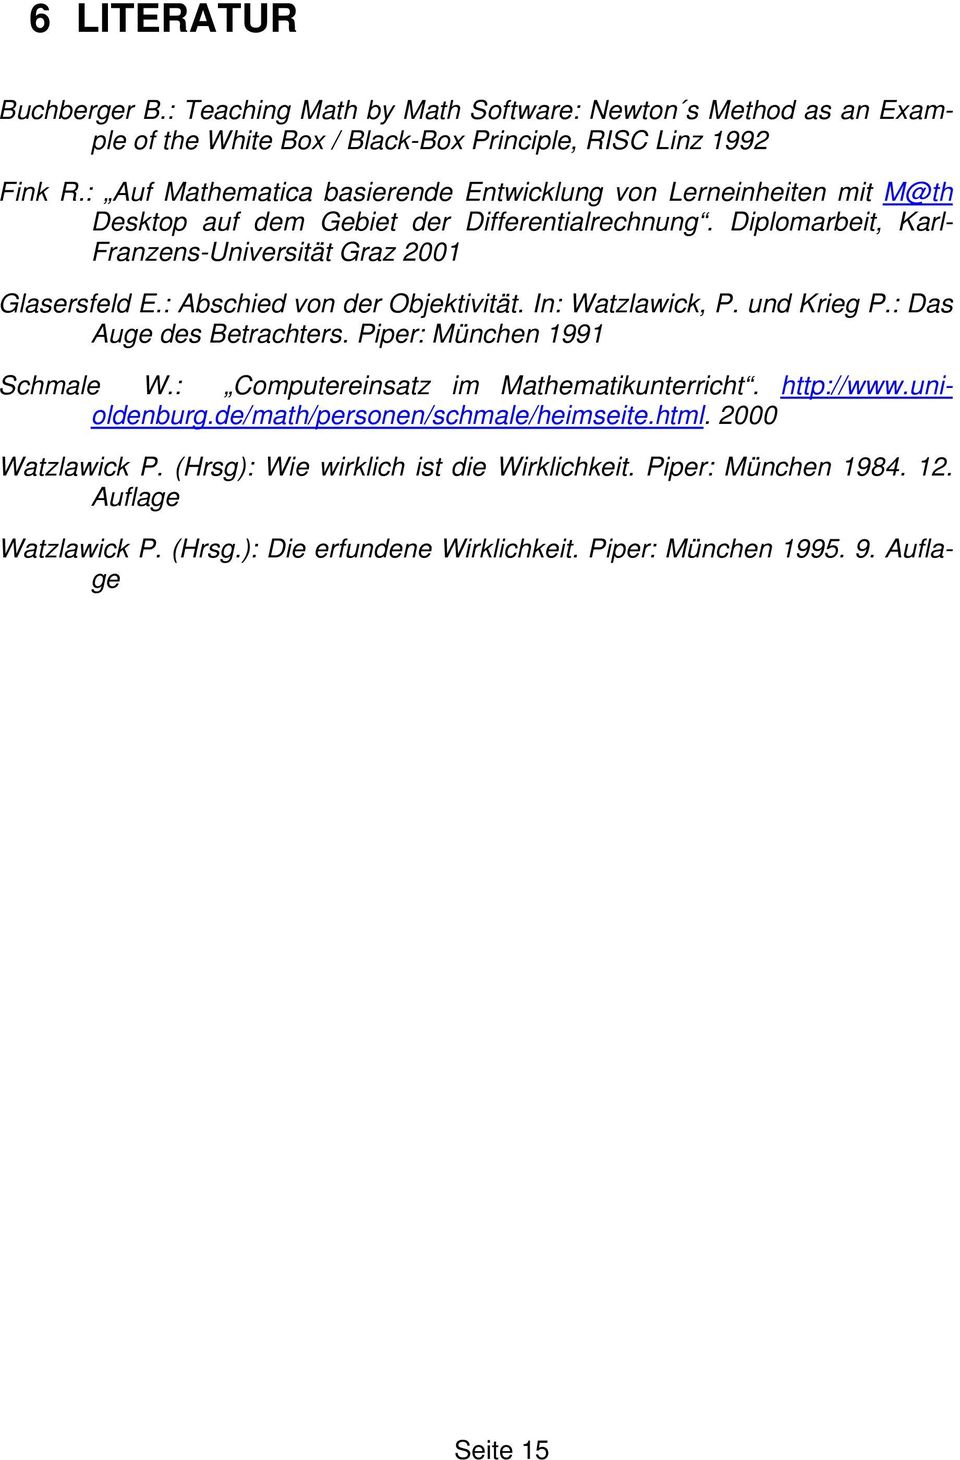 : Abschied von der Objektivität. In: Watzlawick, P. und Krieg P.: Das Auge des Betrachters. Piper: München 1991 Schmale W.: Computereinsatz im Mathematikunterricht. http://www.